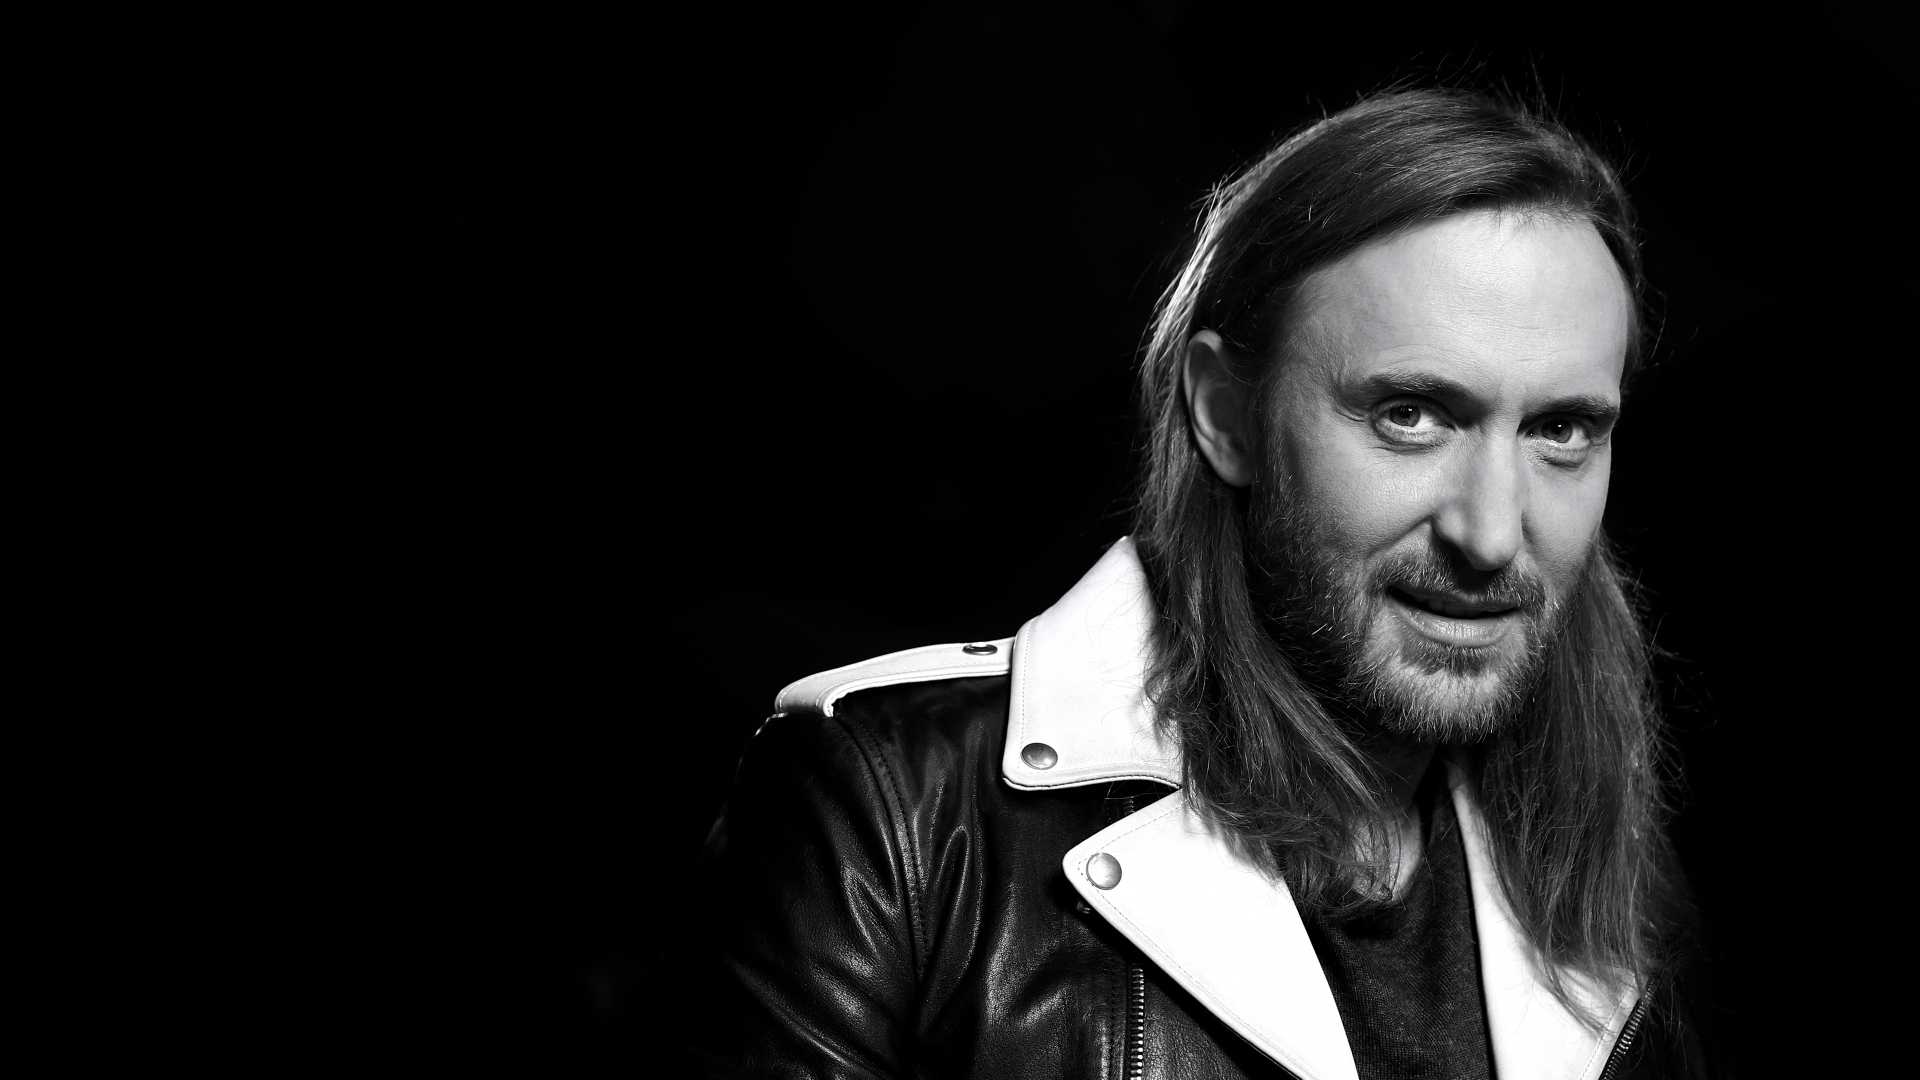 Llegan lanzamientos para cerrar octubre con David Guetta “Big Fu”